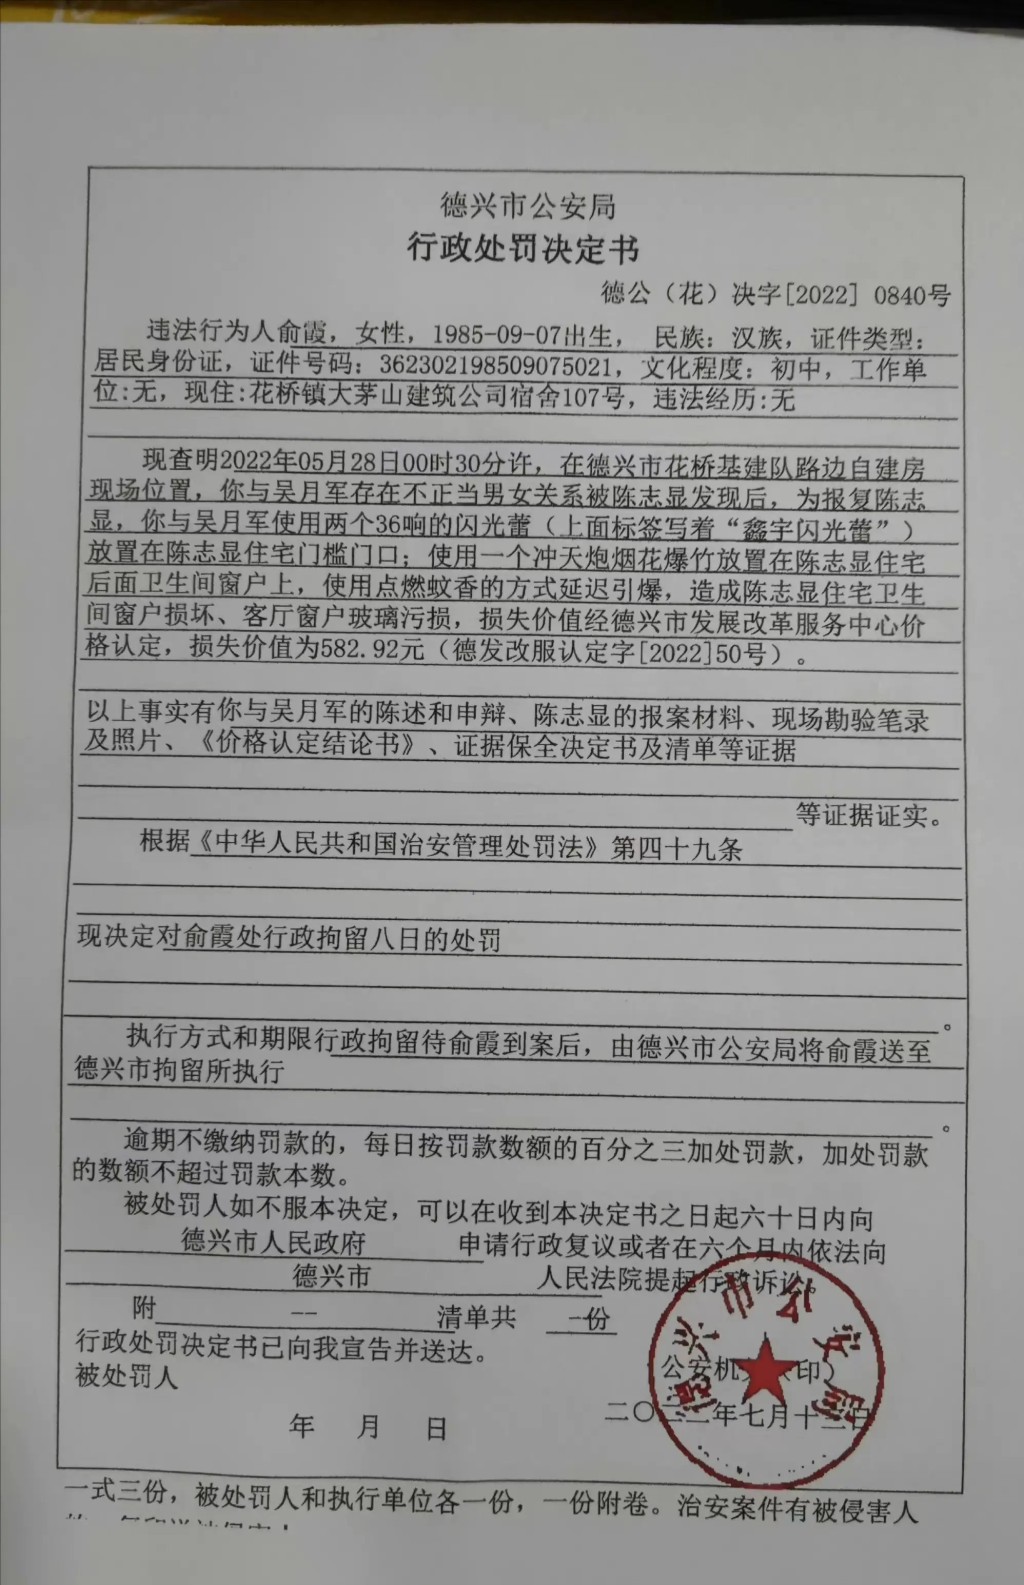 公安確認俞霞與吳月軍有不正當關係。微博